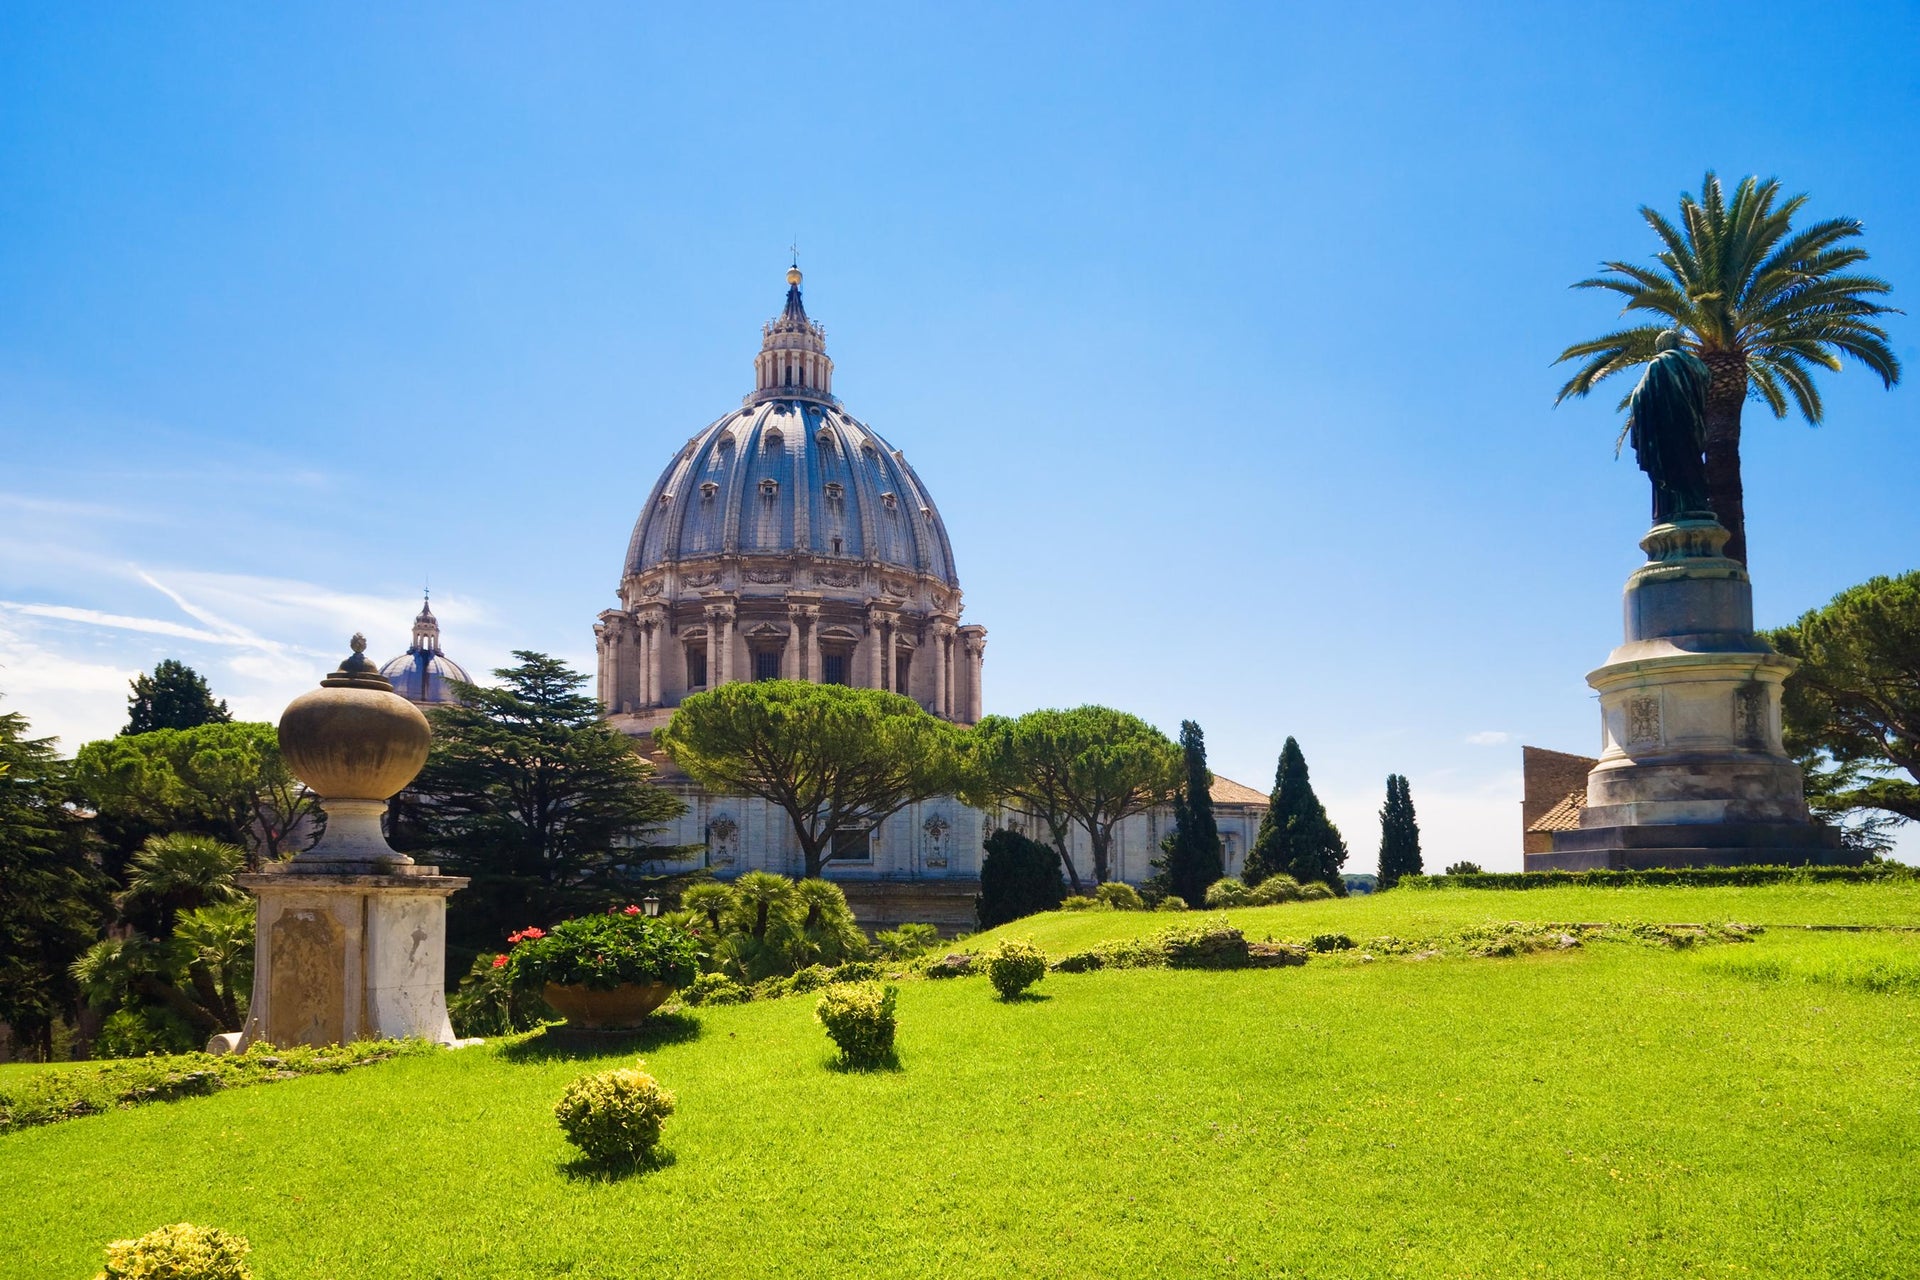 Vatican Gardens + Vatican Museums & Sistine Chapel Ticket